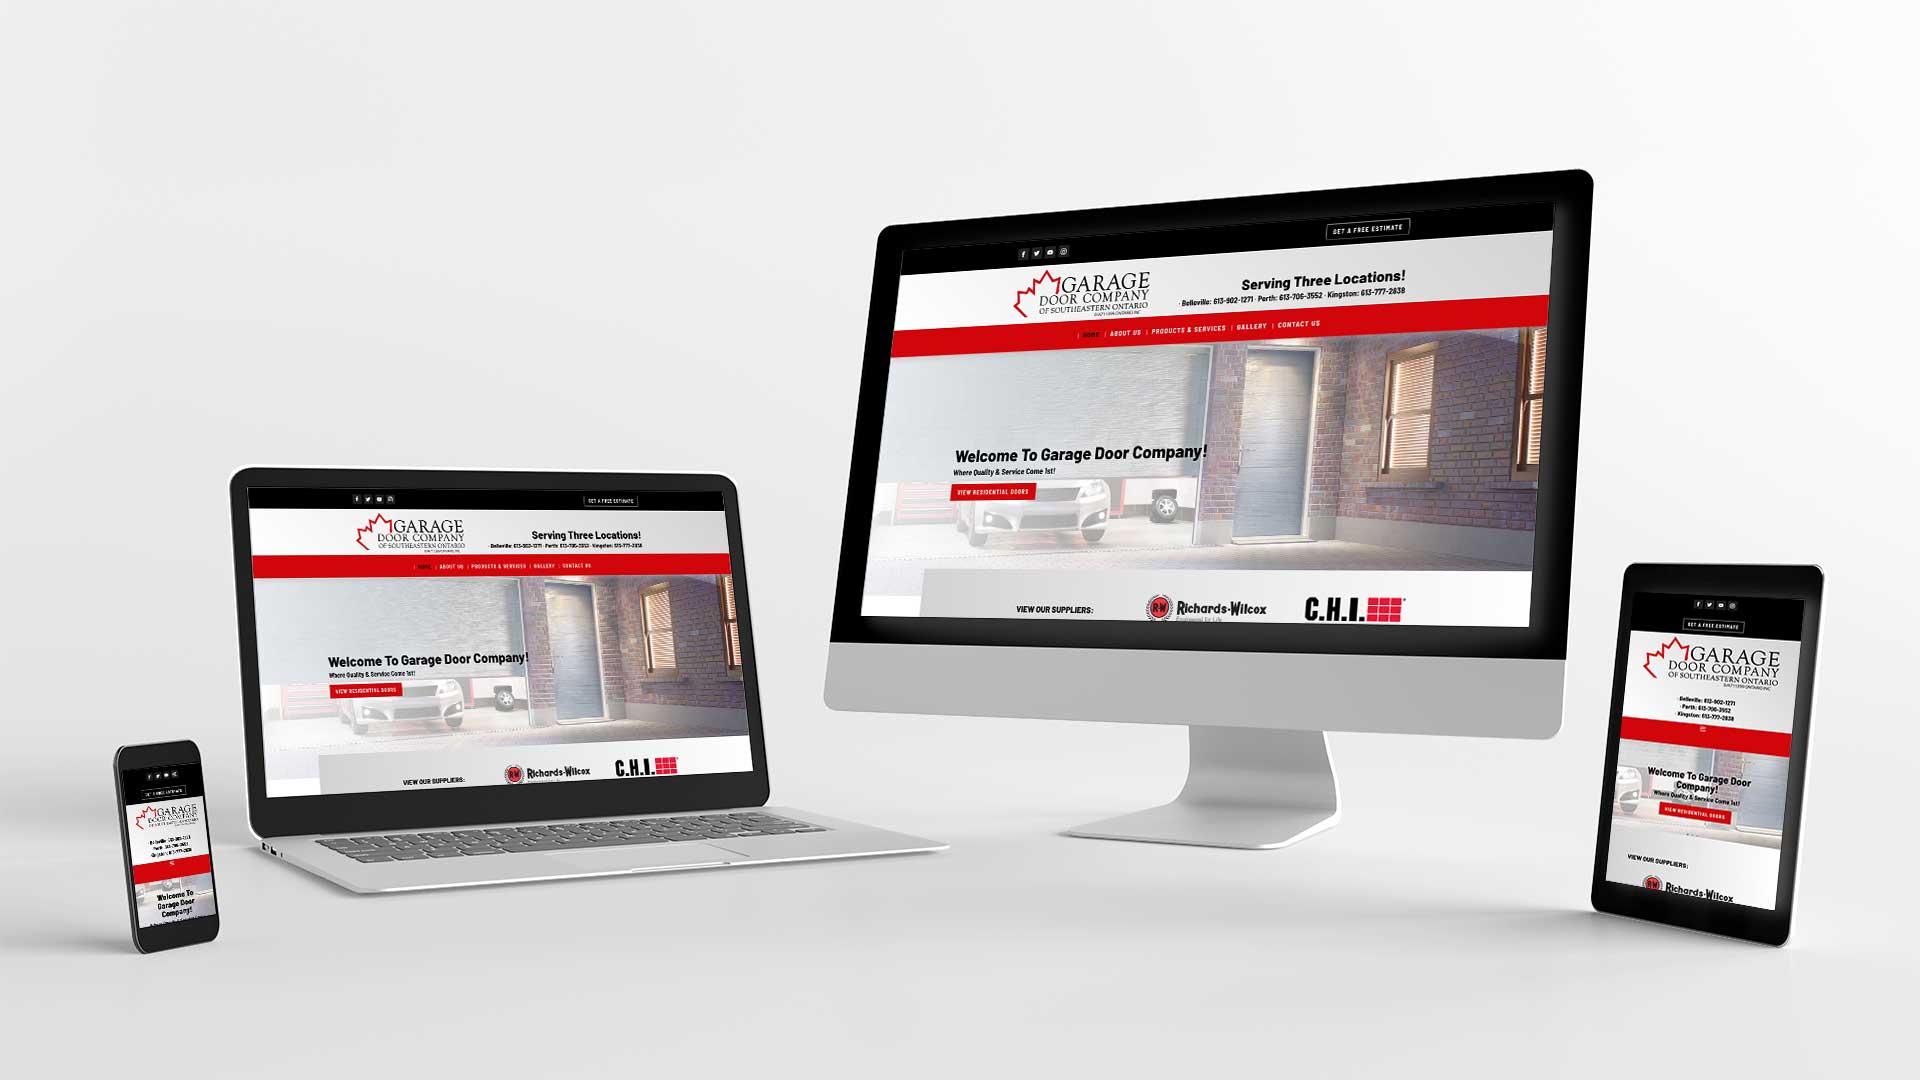 display of Garage Door website on various devices